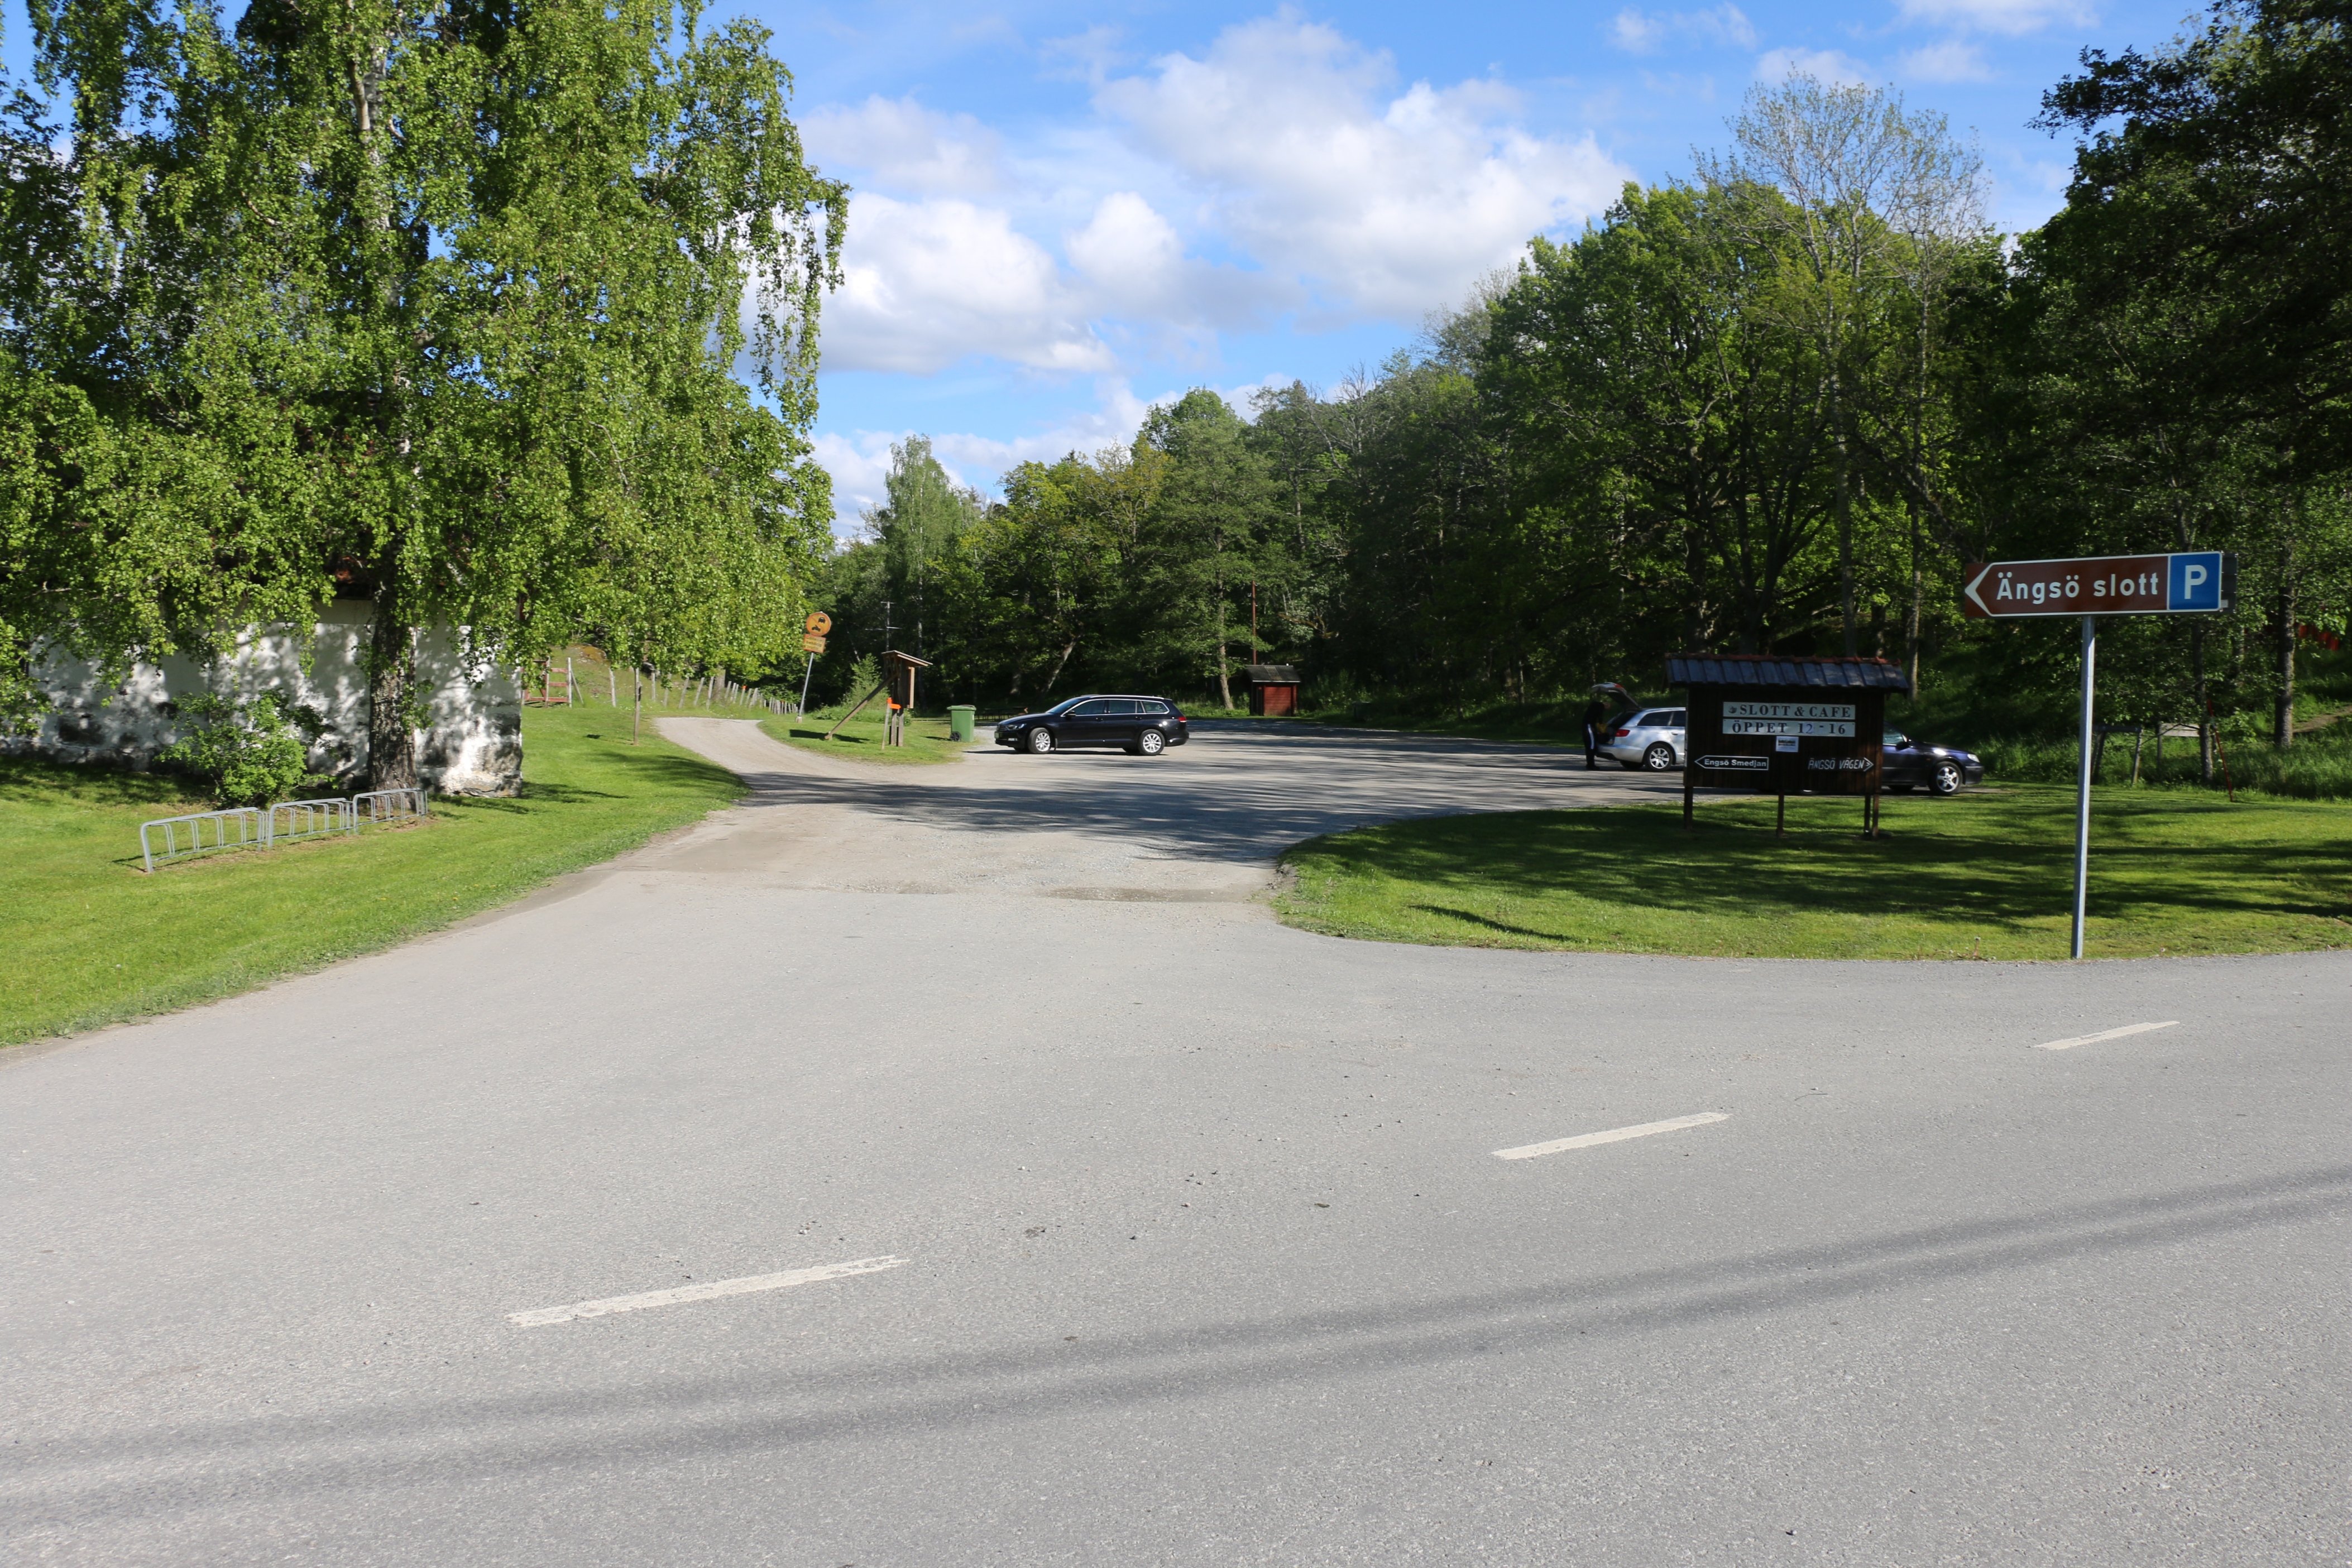 Parkeringsplats med skylt som visar vägen och informationstavlor.